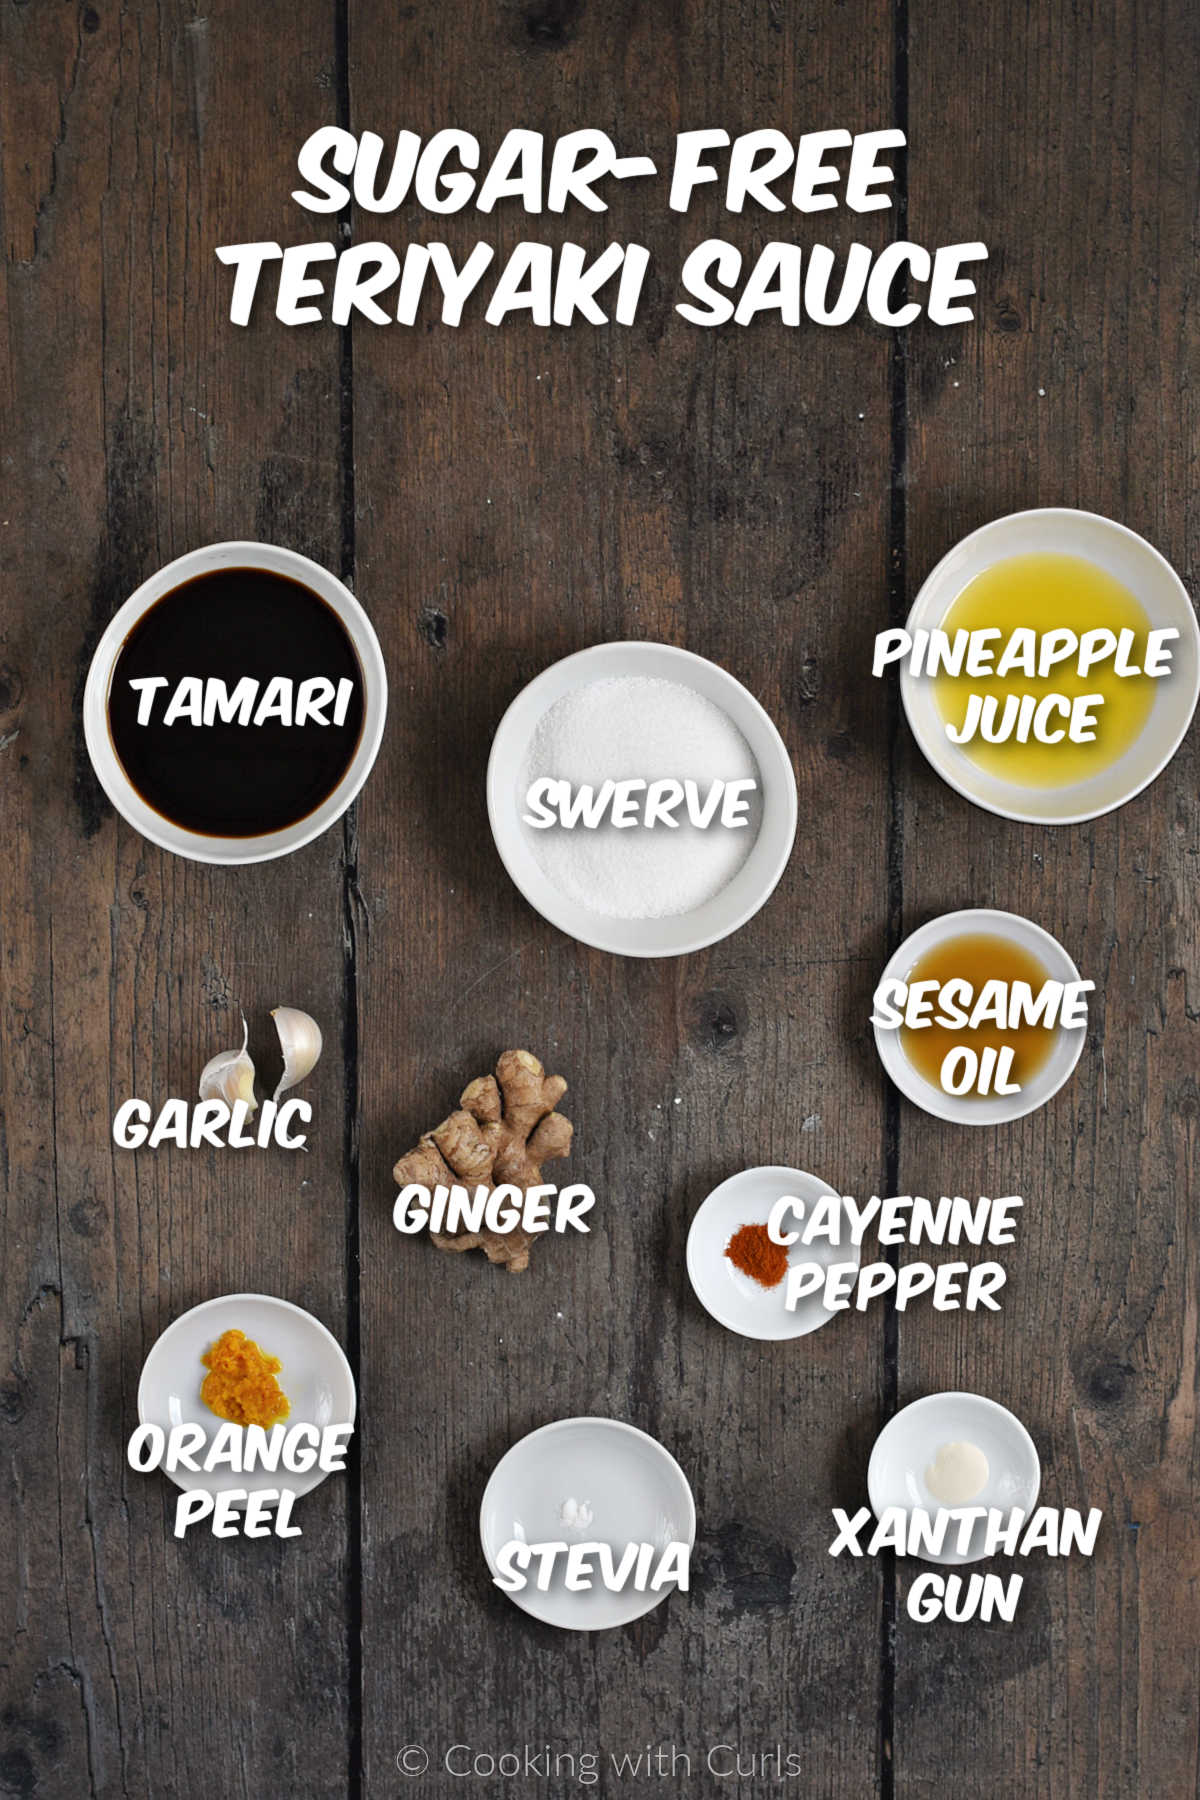 Ingredients to make sugar-free teriyaki sauce.